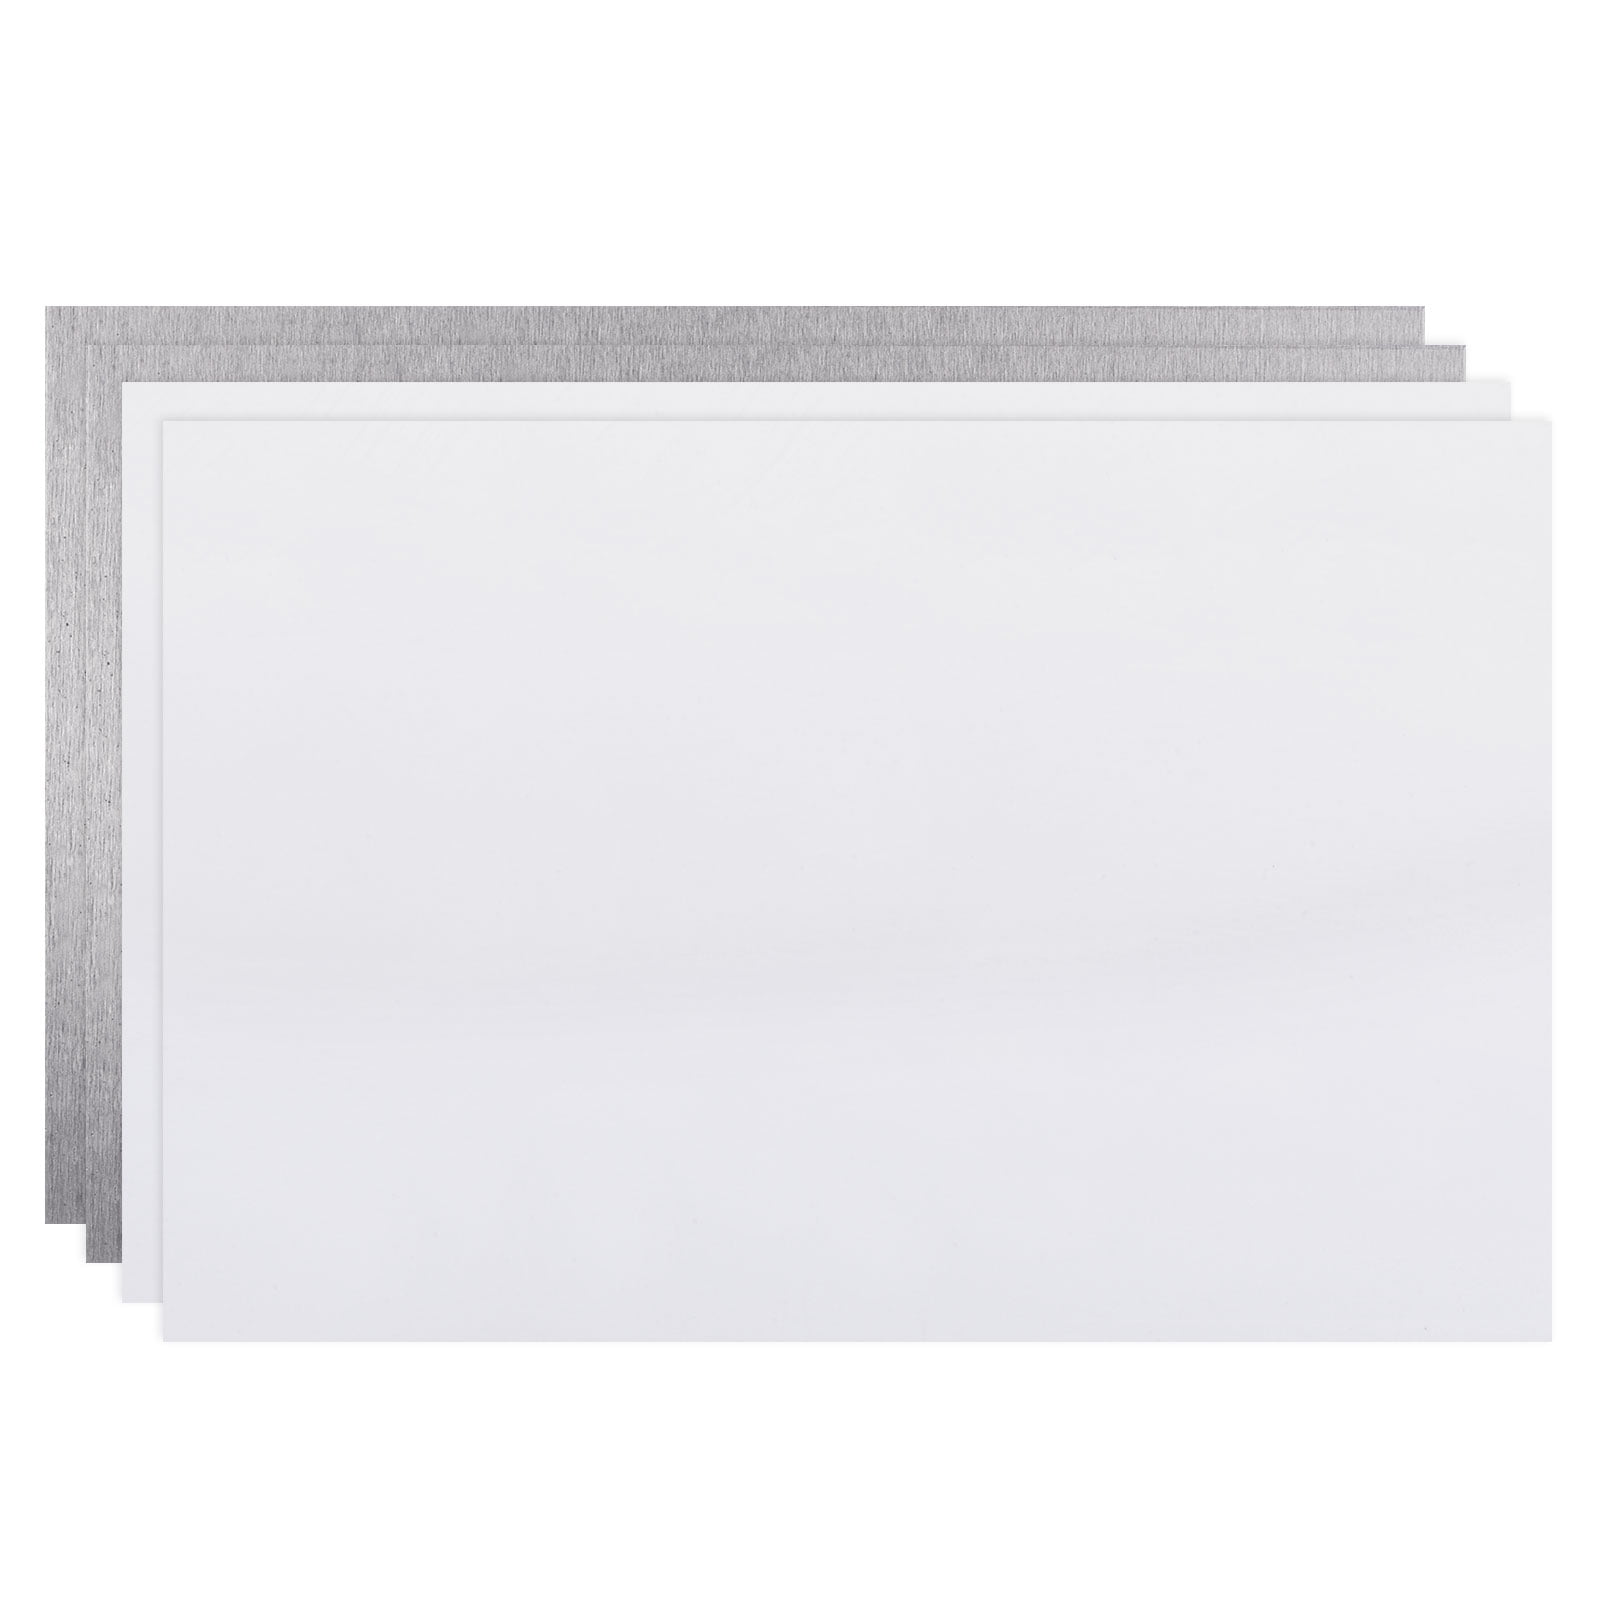 Sublimation Metal Blanks 200x150x1 Aluminum White, 4 Pieces